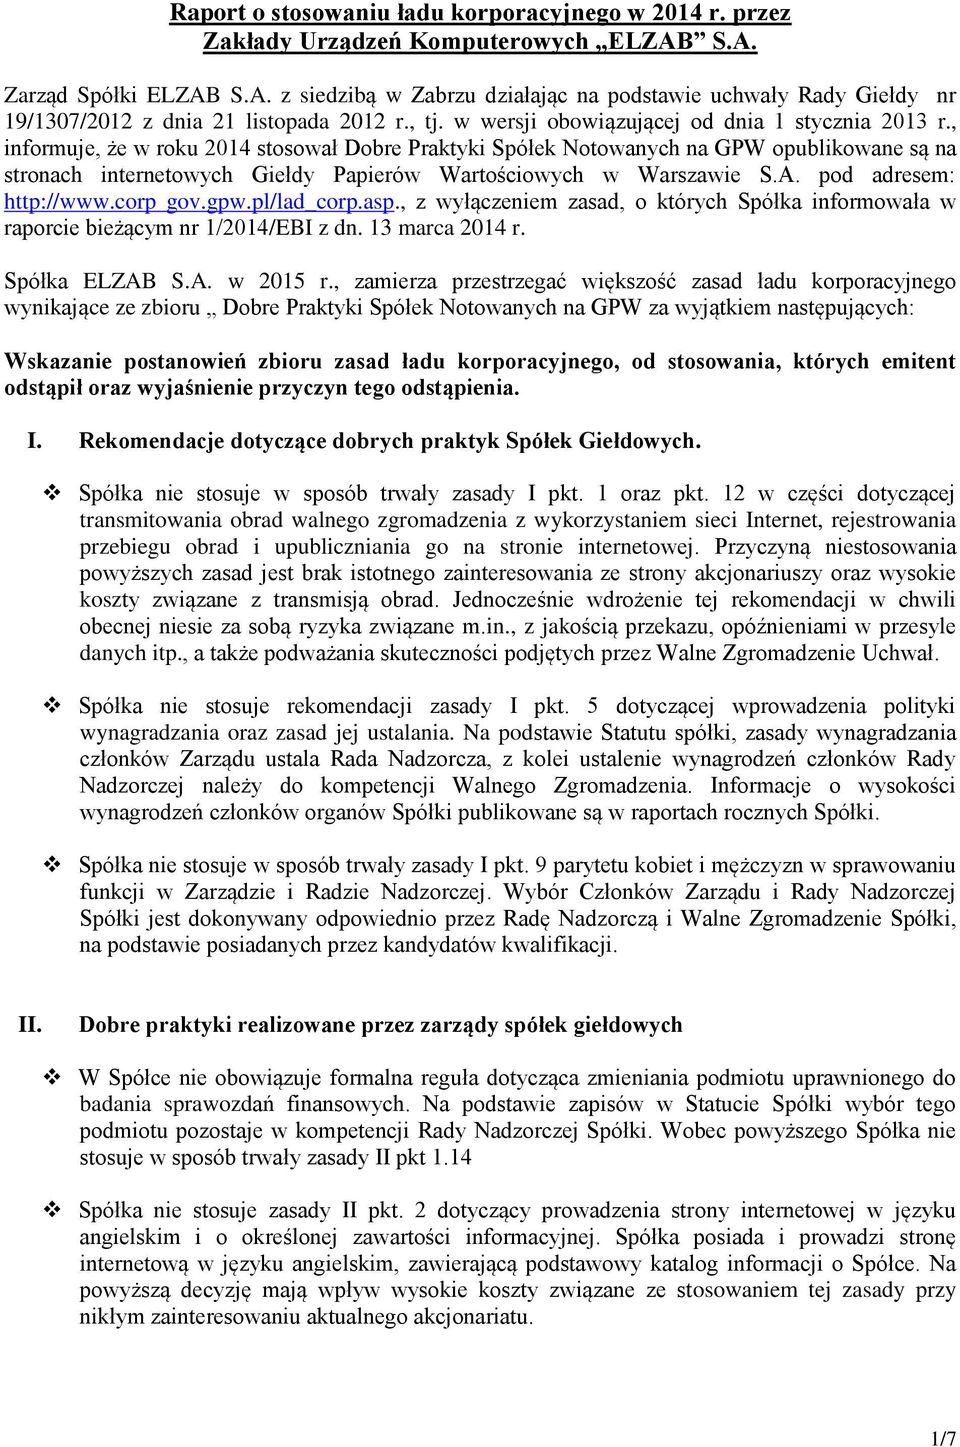 , informuje, że w roku 2014 stosował Dobre Praktyki Spółek Notowanych na GPW opublikowane są na stronach internetowych Giełdy Papierów Wartościowych w Warszawie S.A. pod adresem: http://www.corp gov.